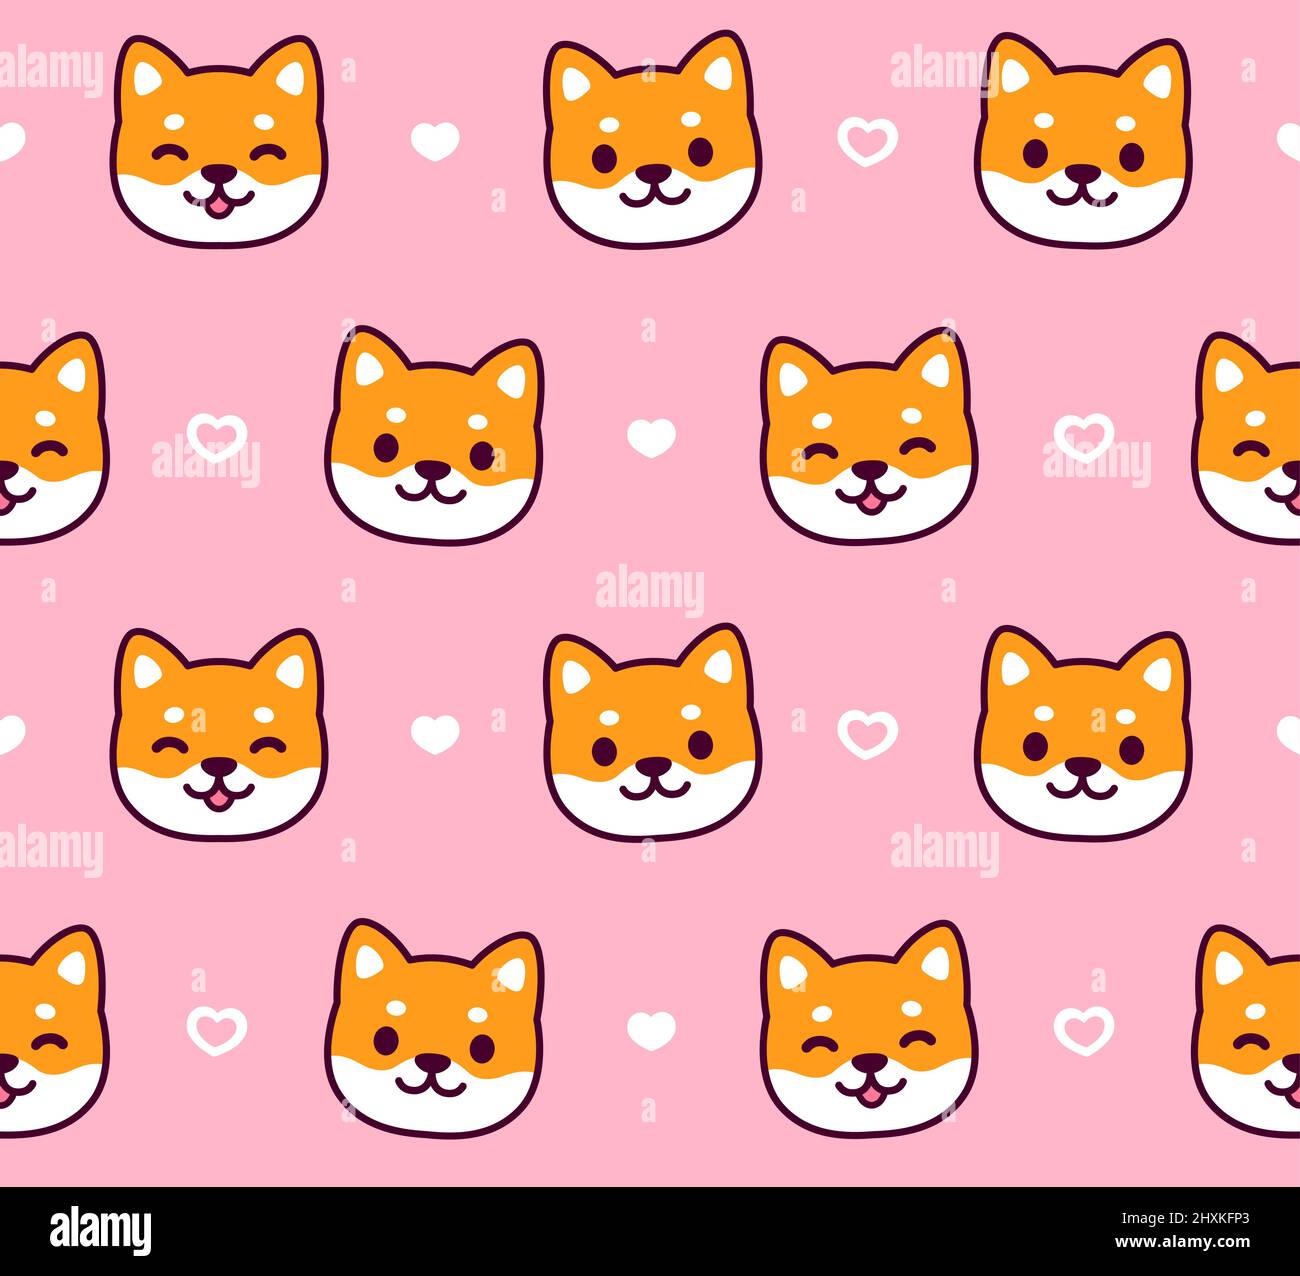 Niedliche Cartoon Shiba Inu Hund Muster. Kawaii Welpen Gesichter auf rosa Hintergrund mit Herz kritzeln. Einfache Vektordarstellung. Stock Vektor